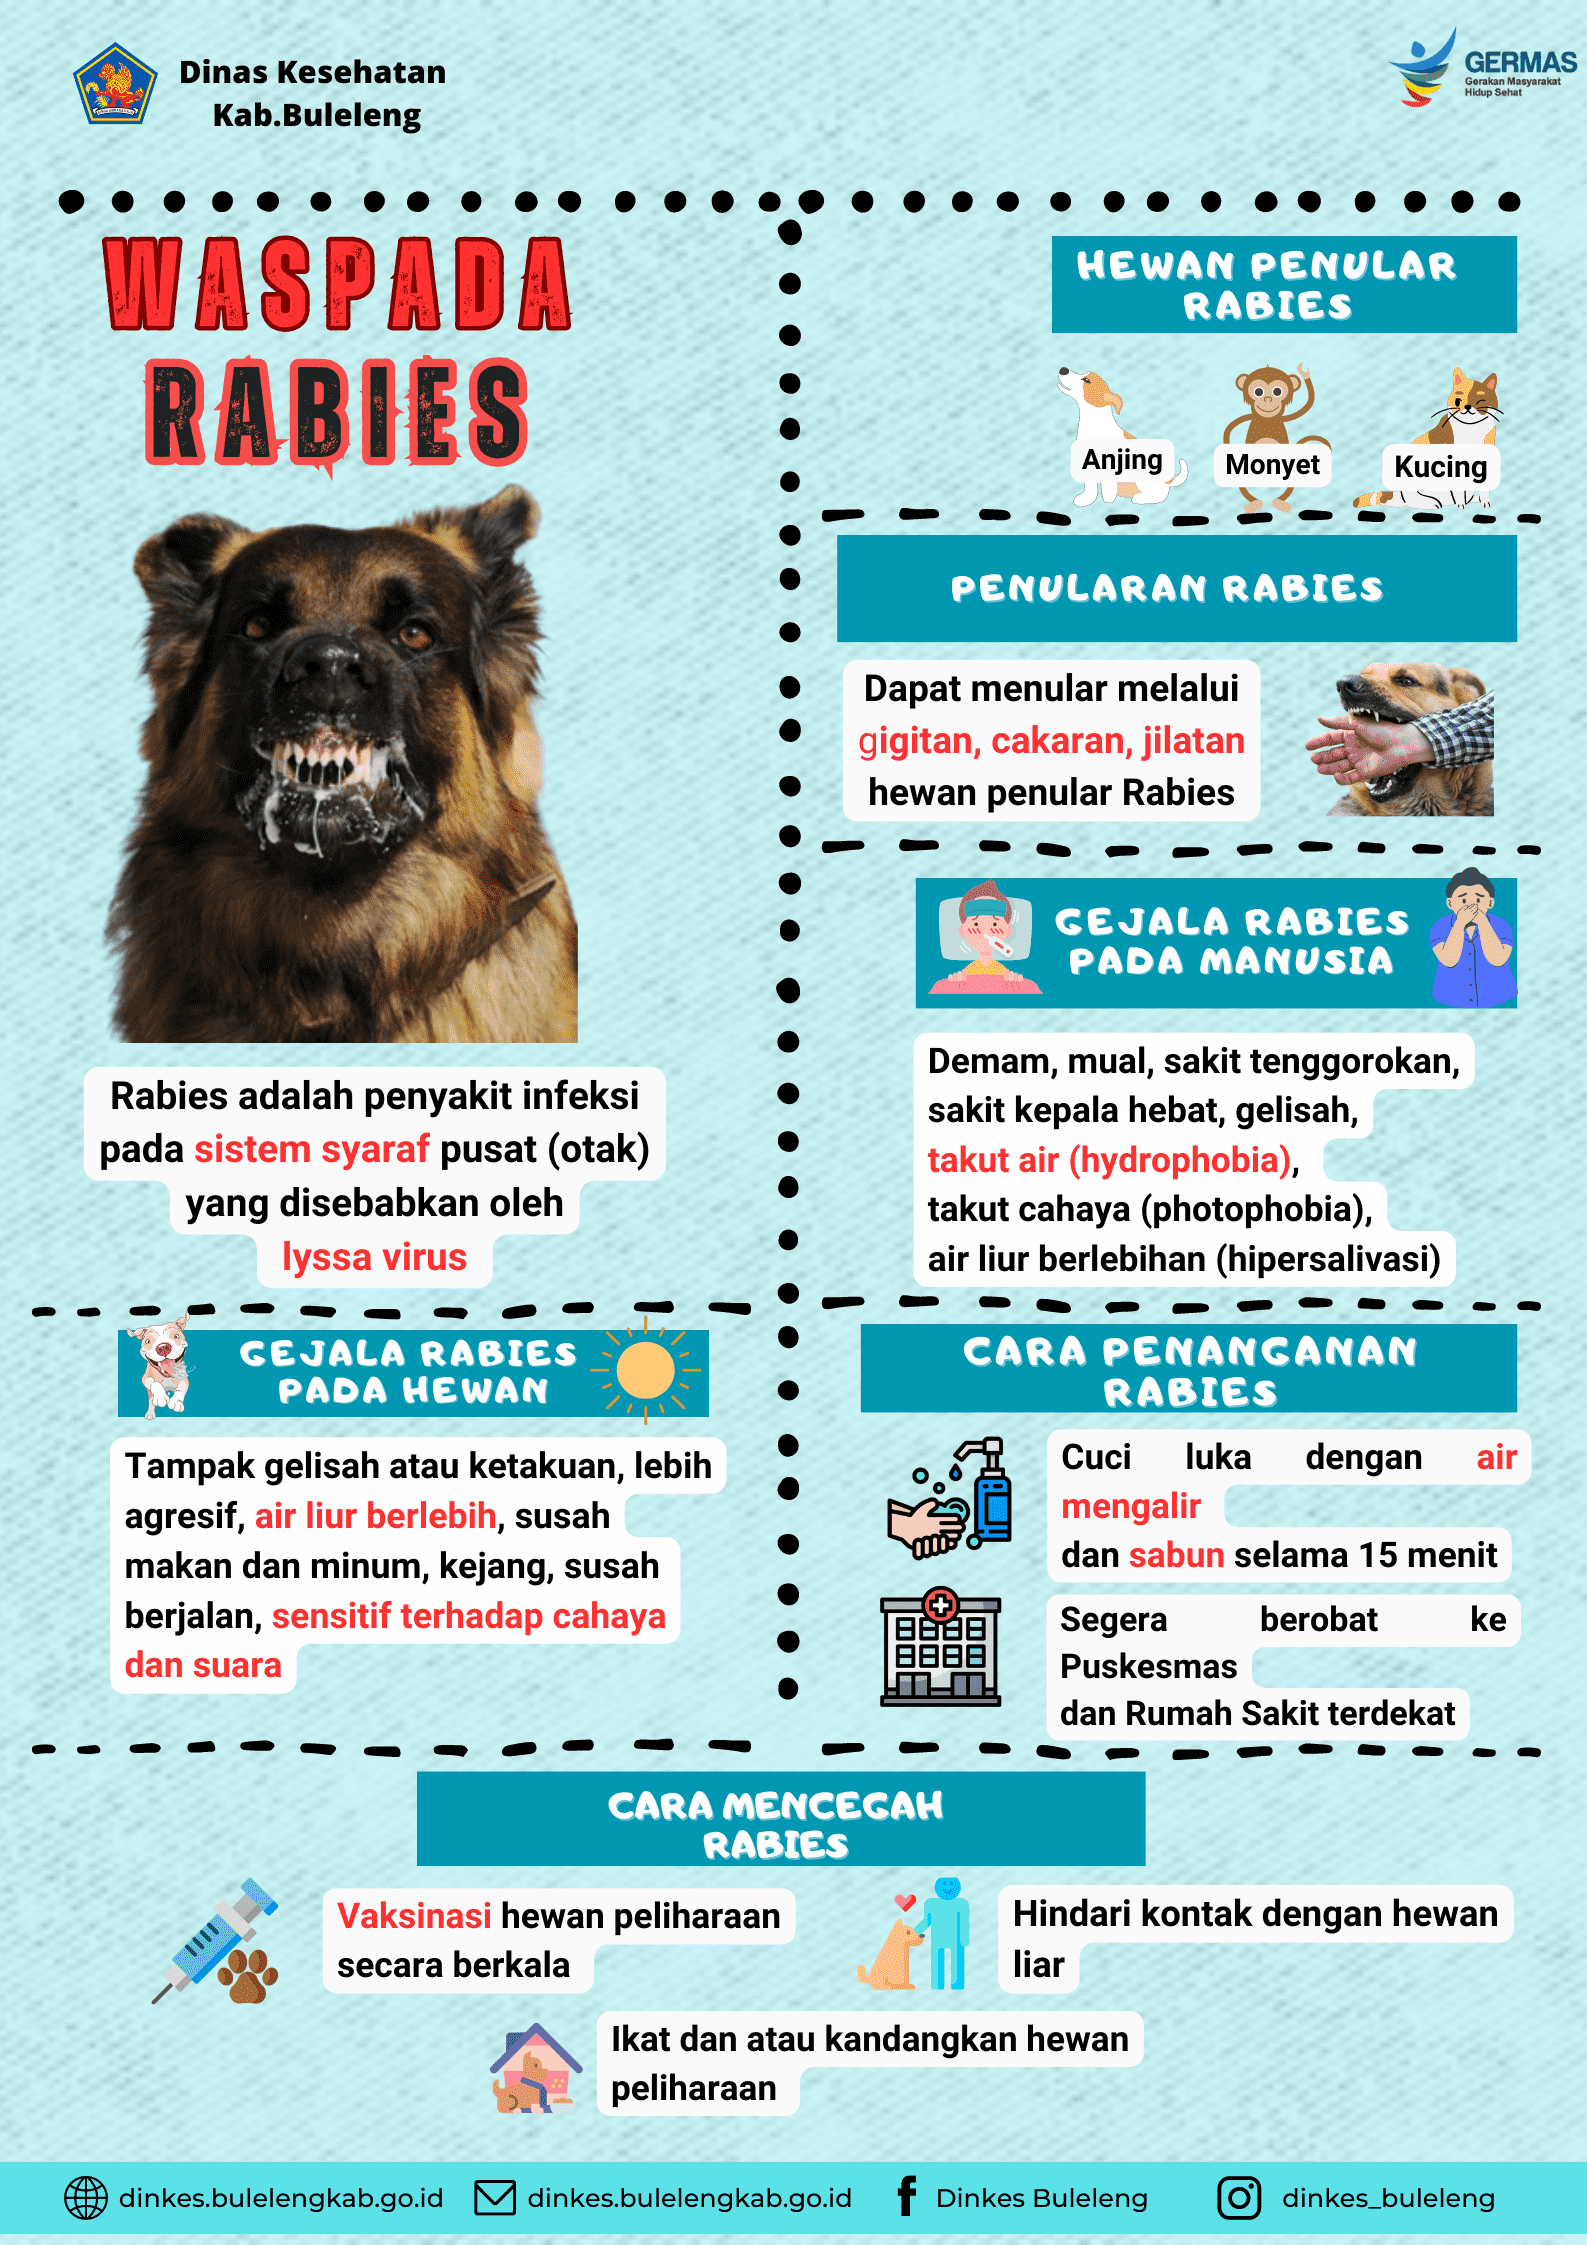 Waspada Rabies, Rabies bisa membunuh anda